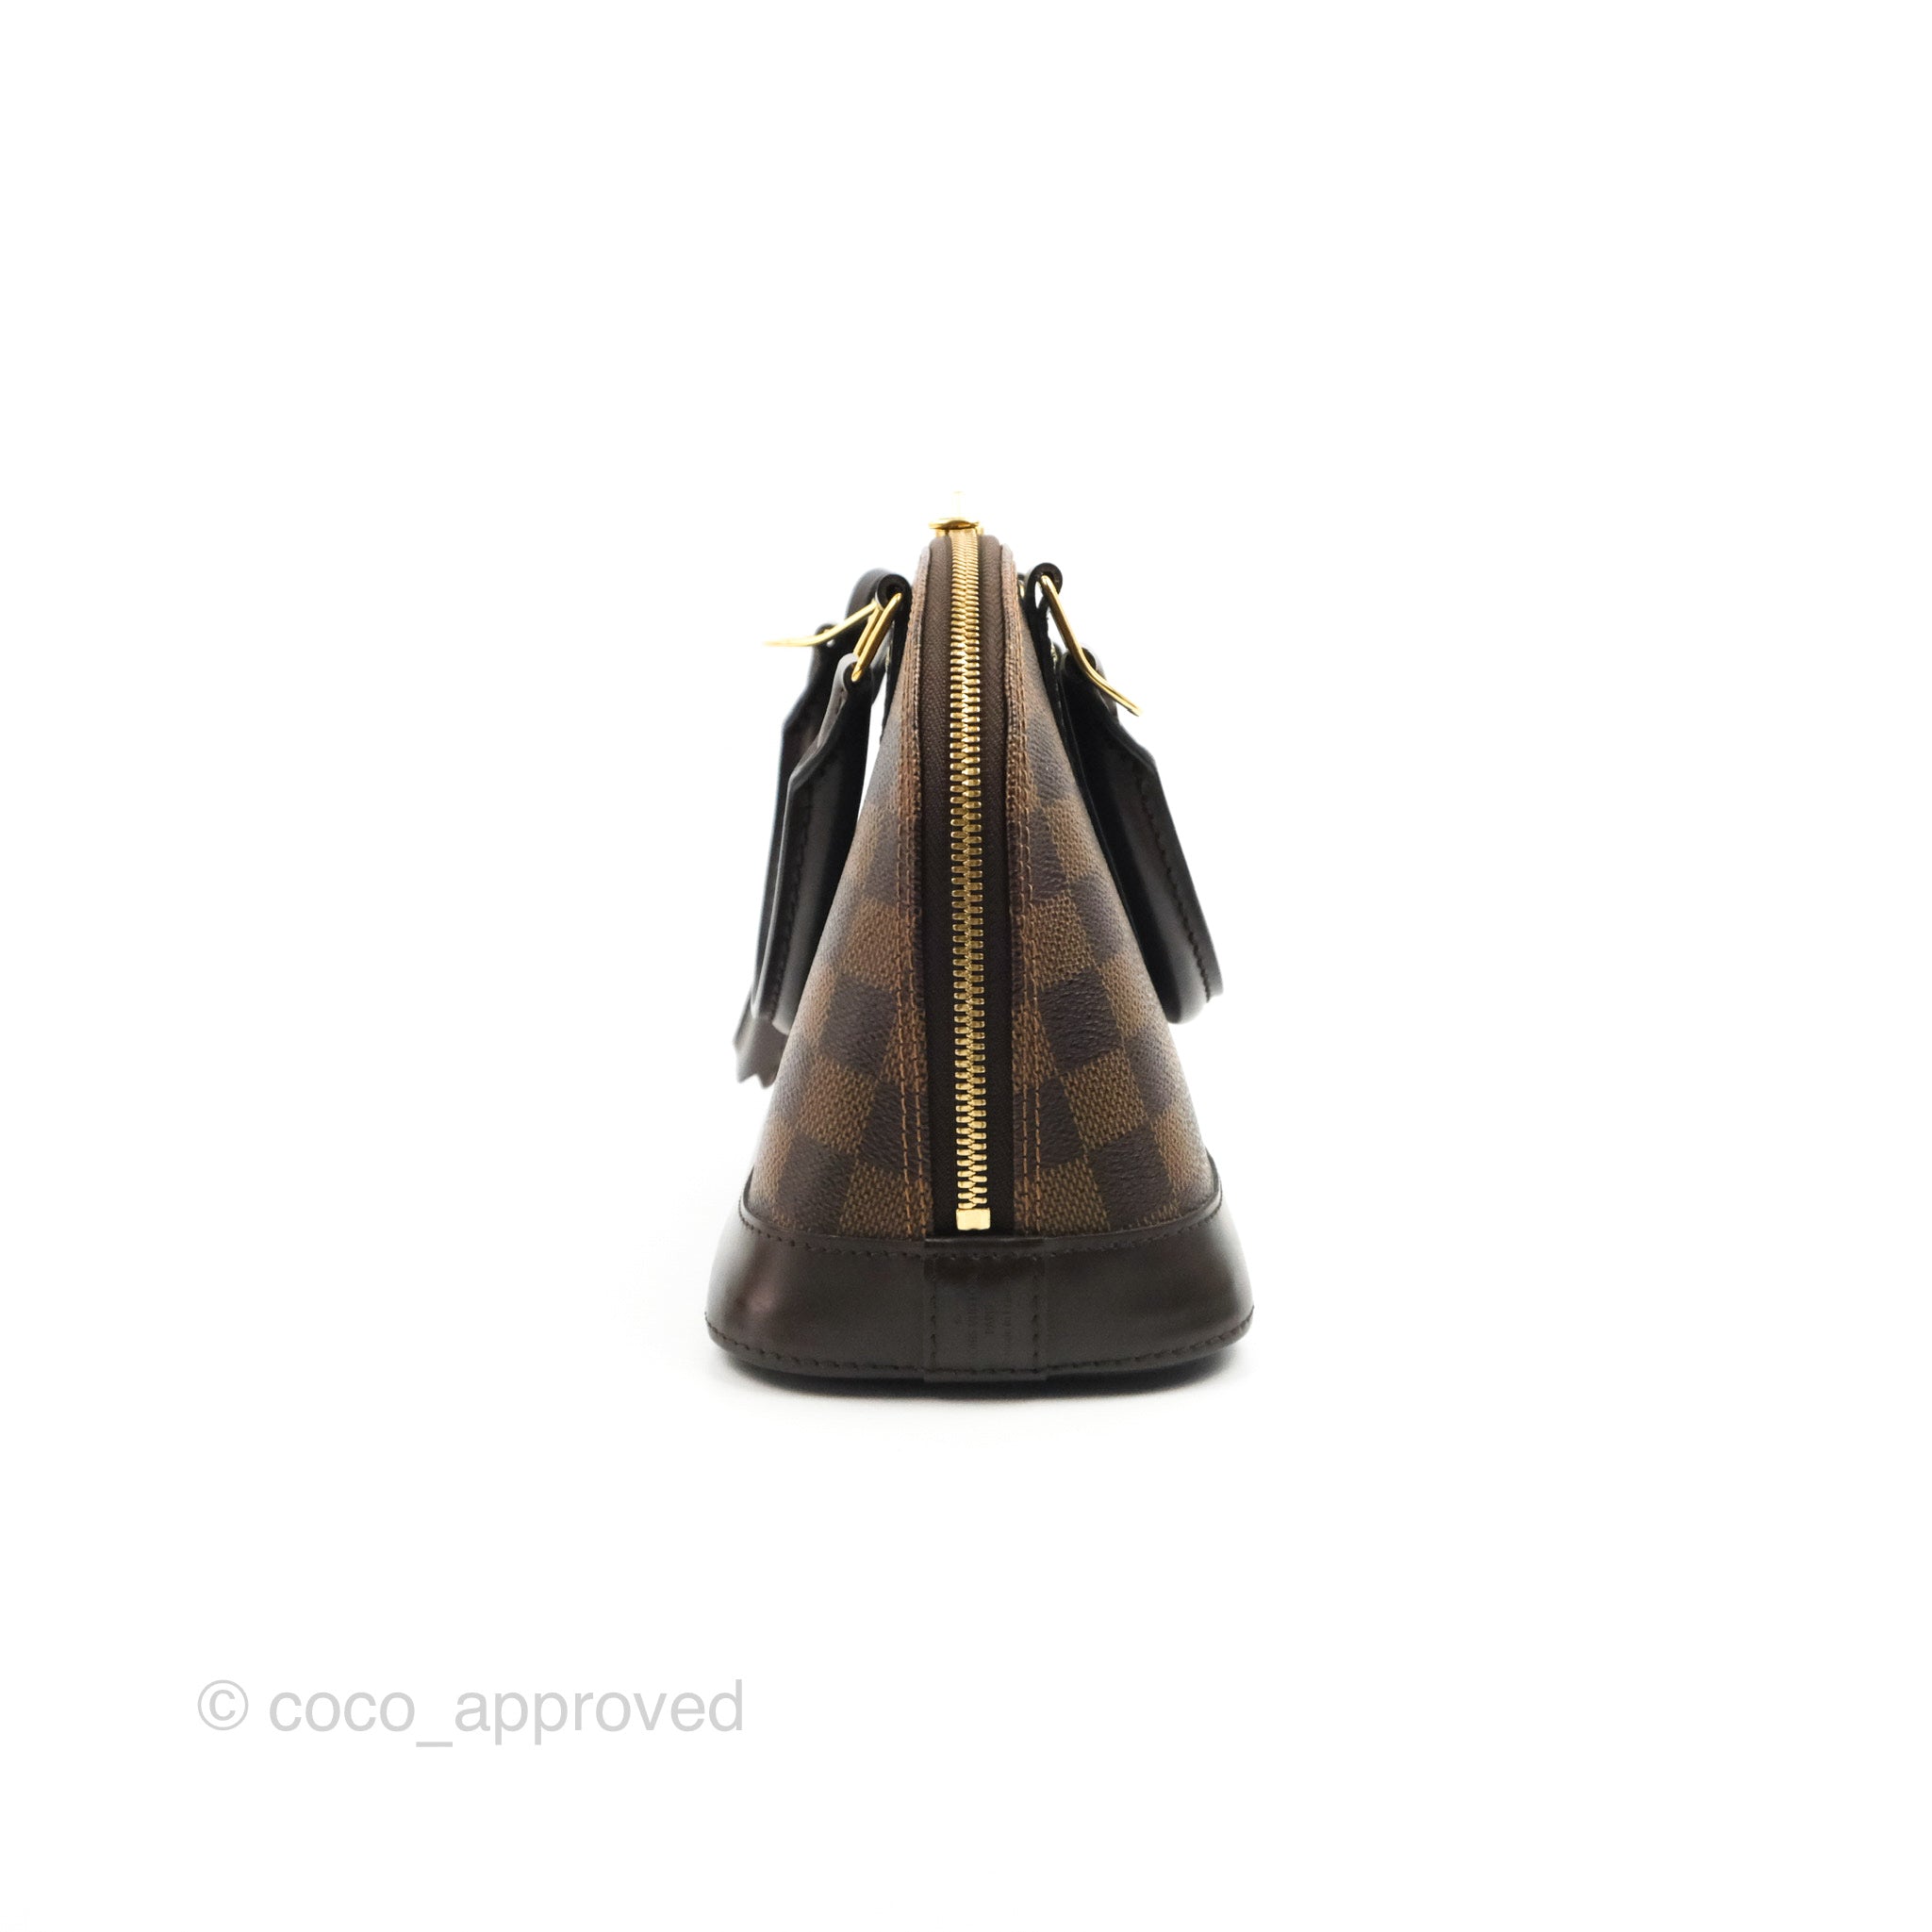 Louis Vuitton Alma Bb Crossbody Bag